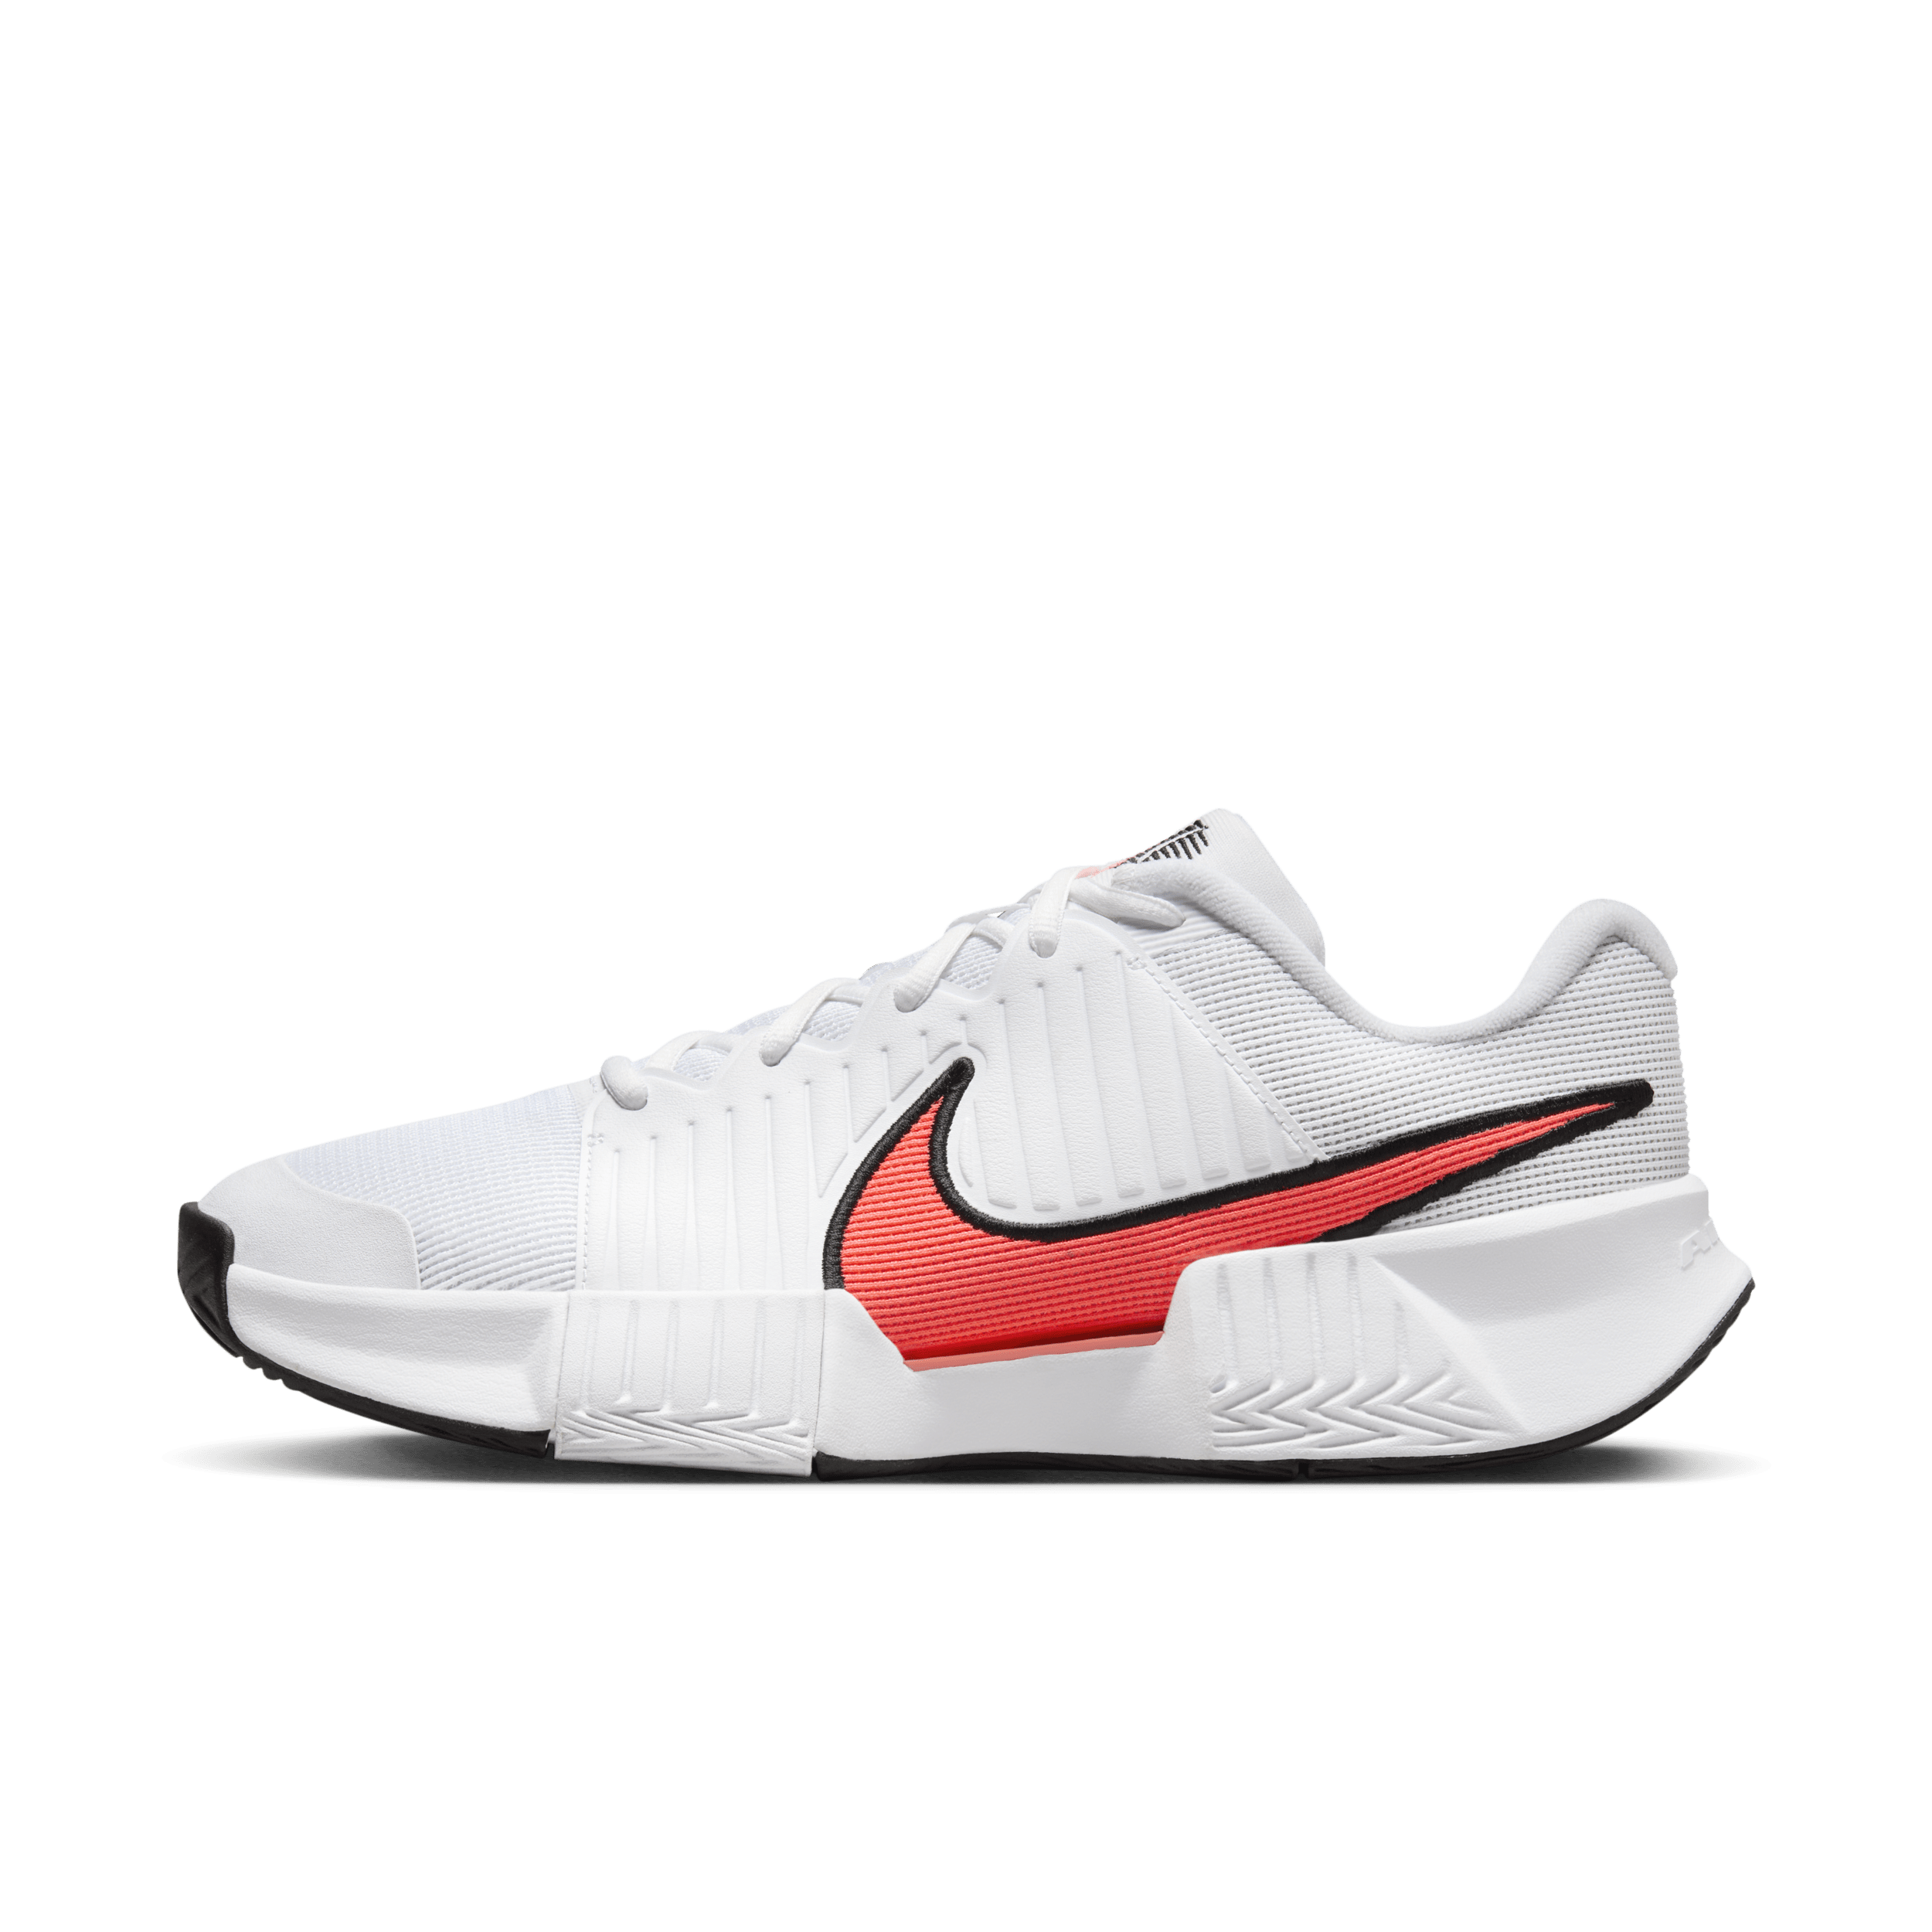 Nike GP Challenge Pro hardcourt tennisschoenen voor heren - Wit